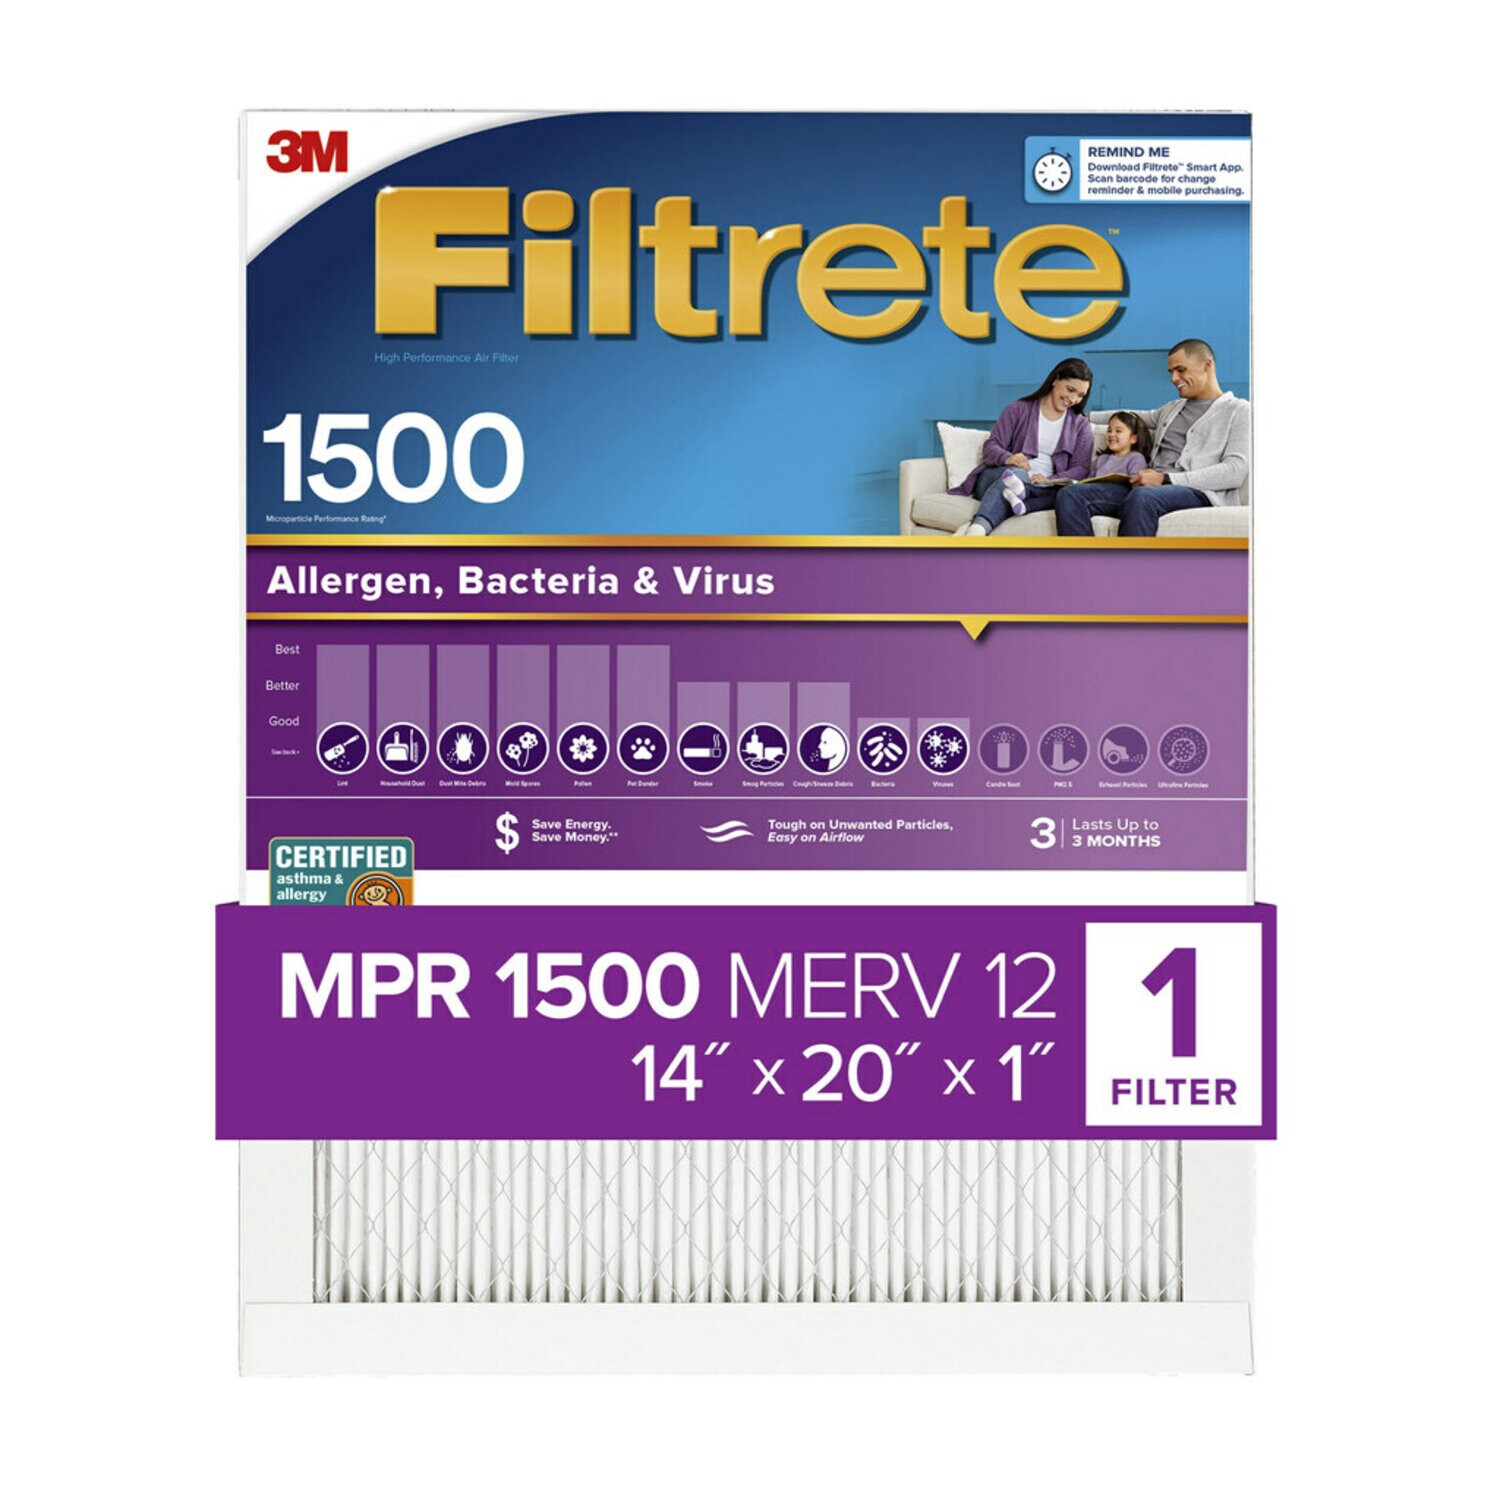 7100222947 - Filtrete High Performance Air Filter 1500 MPR 2005-4, 14 in x 20 in x 1 in (35.5 cm x 50.8 cm x 2.5 cm)